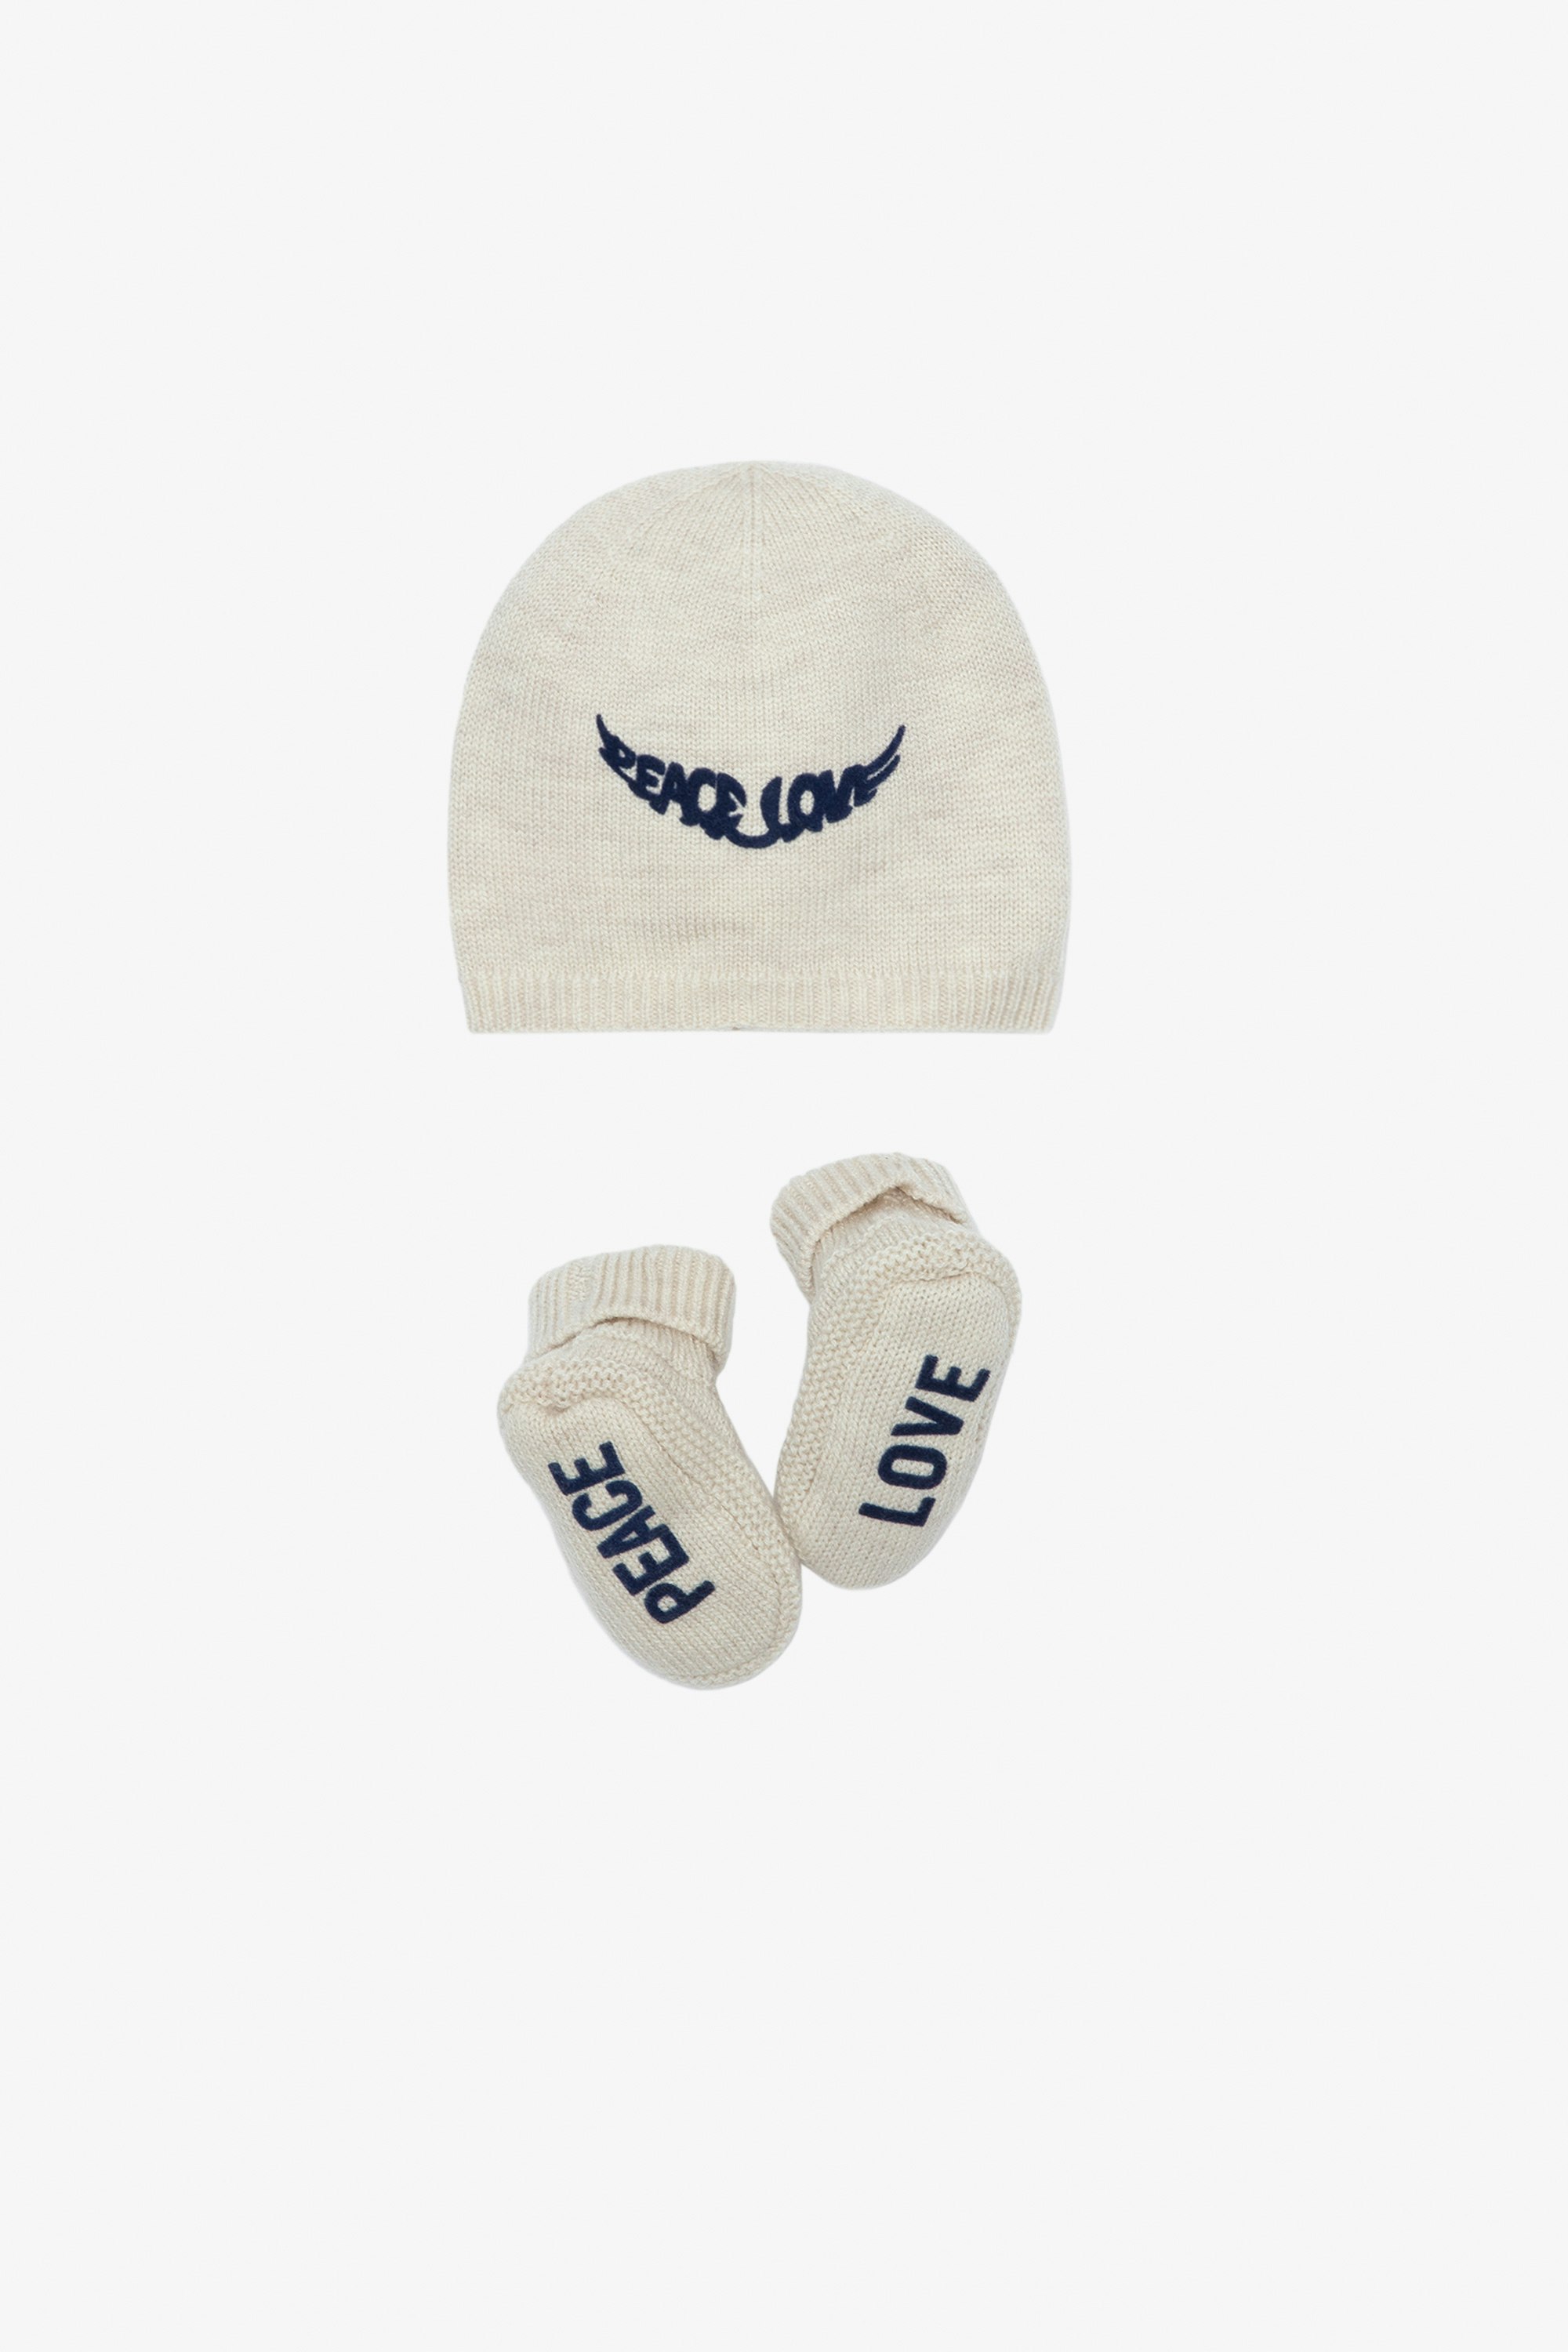 Completo Molly Neonato - Completo berretto e babbucce in maglia ecru con scritte "Peace" e "Love" da neonato.